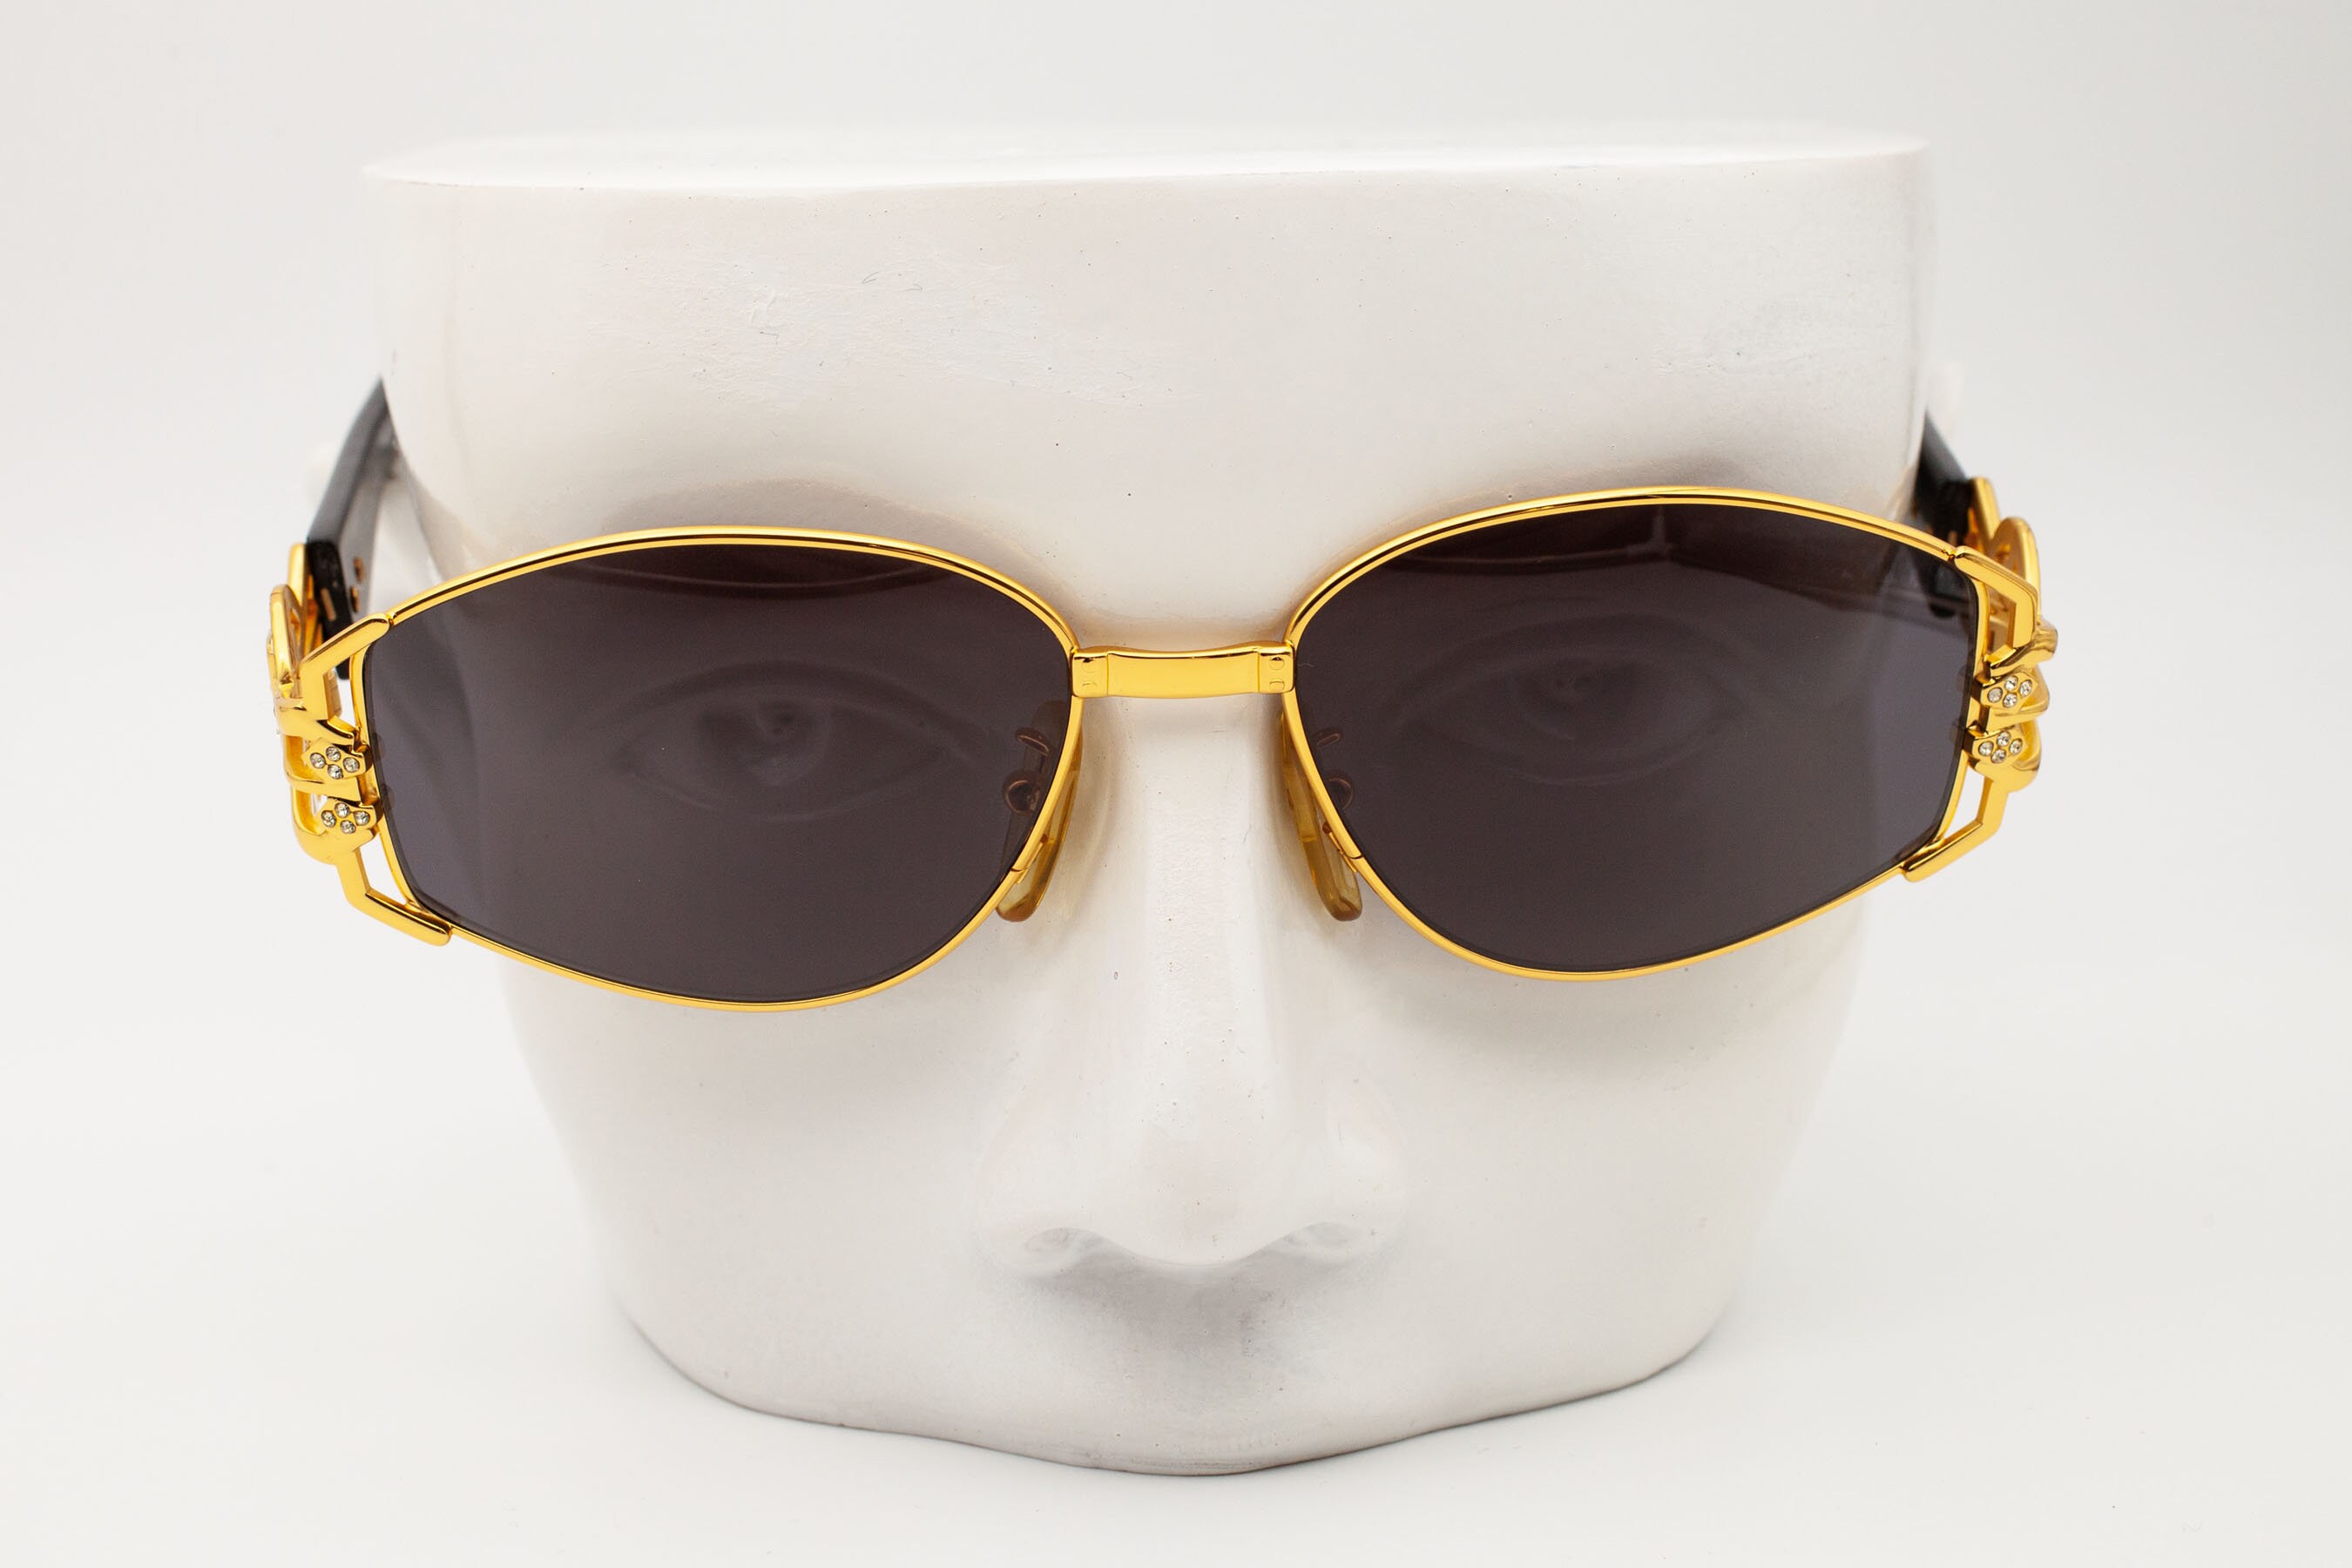 Galitzine G10/1 Oversized Square Vintage Sunglasses New Old - Etsy